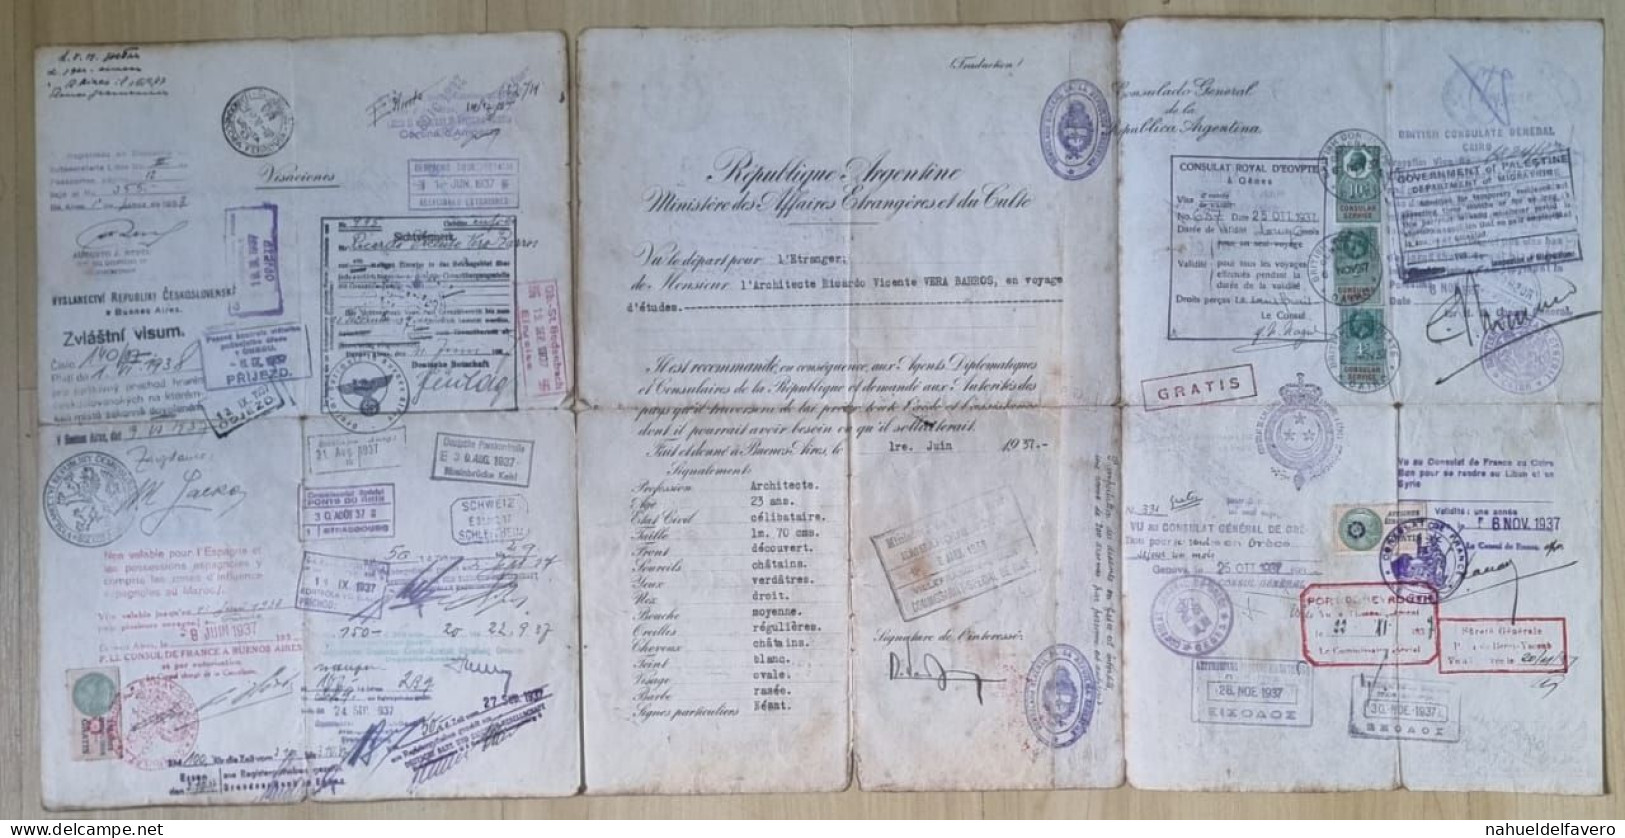 Argentina 1937 pasaporte con maracas y sellos de muchos paises